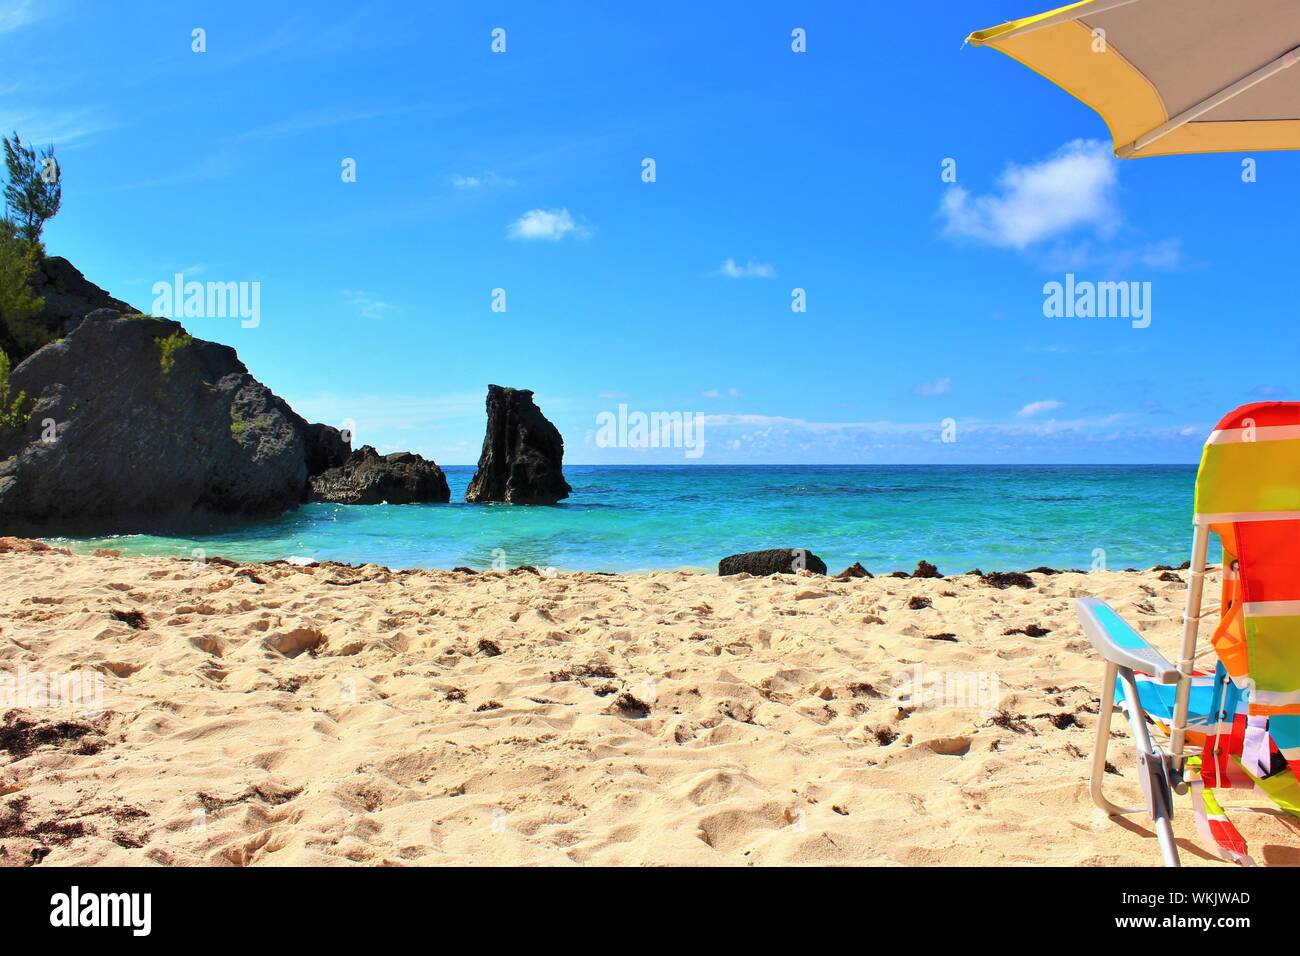 Captura conceptual de un idílico destino vacacional. Una apartada playa Paraíso en las Bermudas, con sol, mar color turquesa, arena blanca, sombrilla y tumbona. Foto de stock